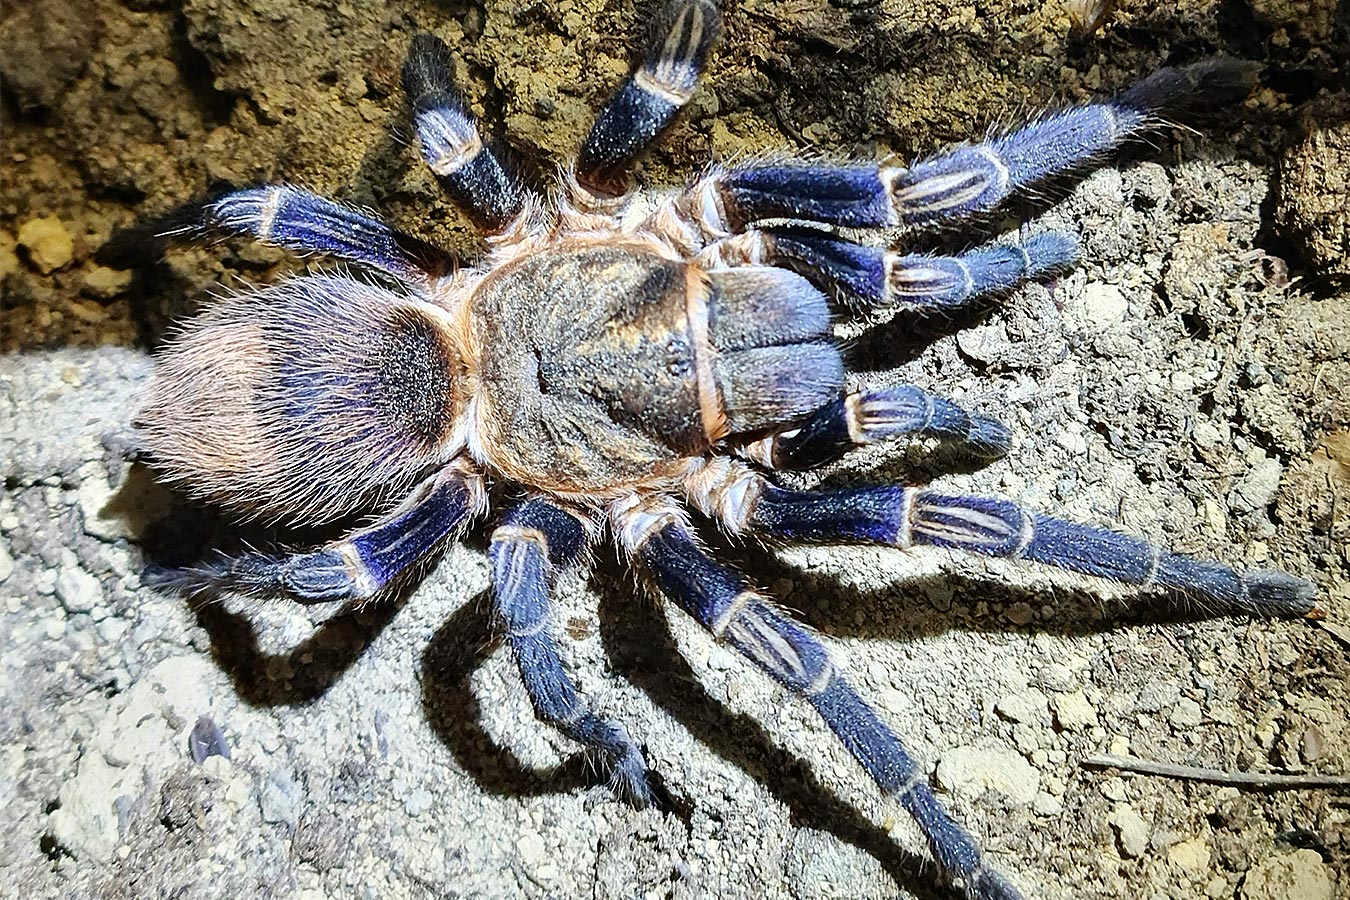 Theraphosinae sp. “Cuzco” 1cm